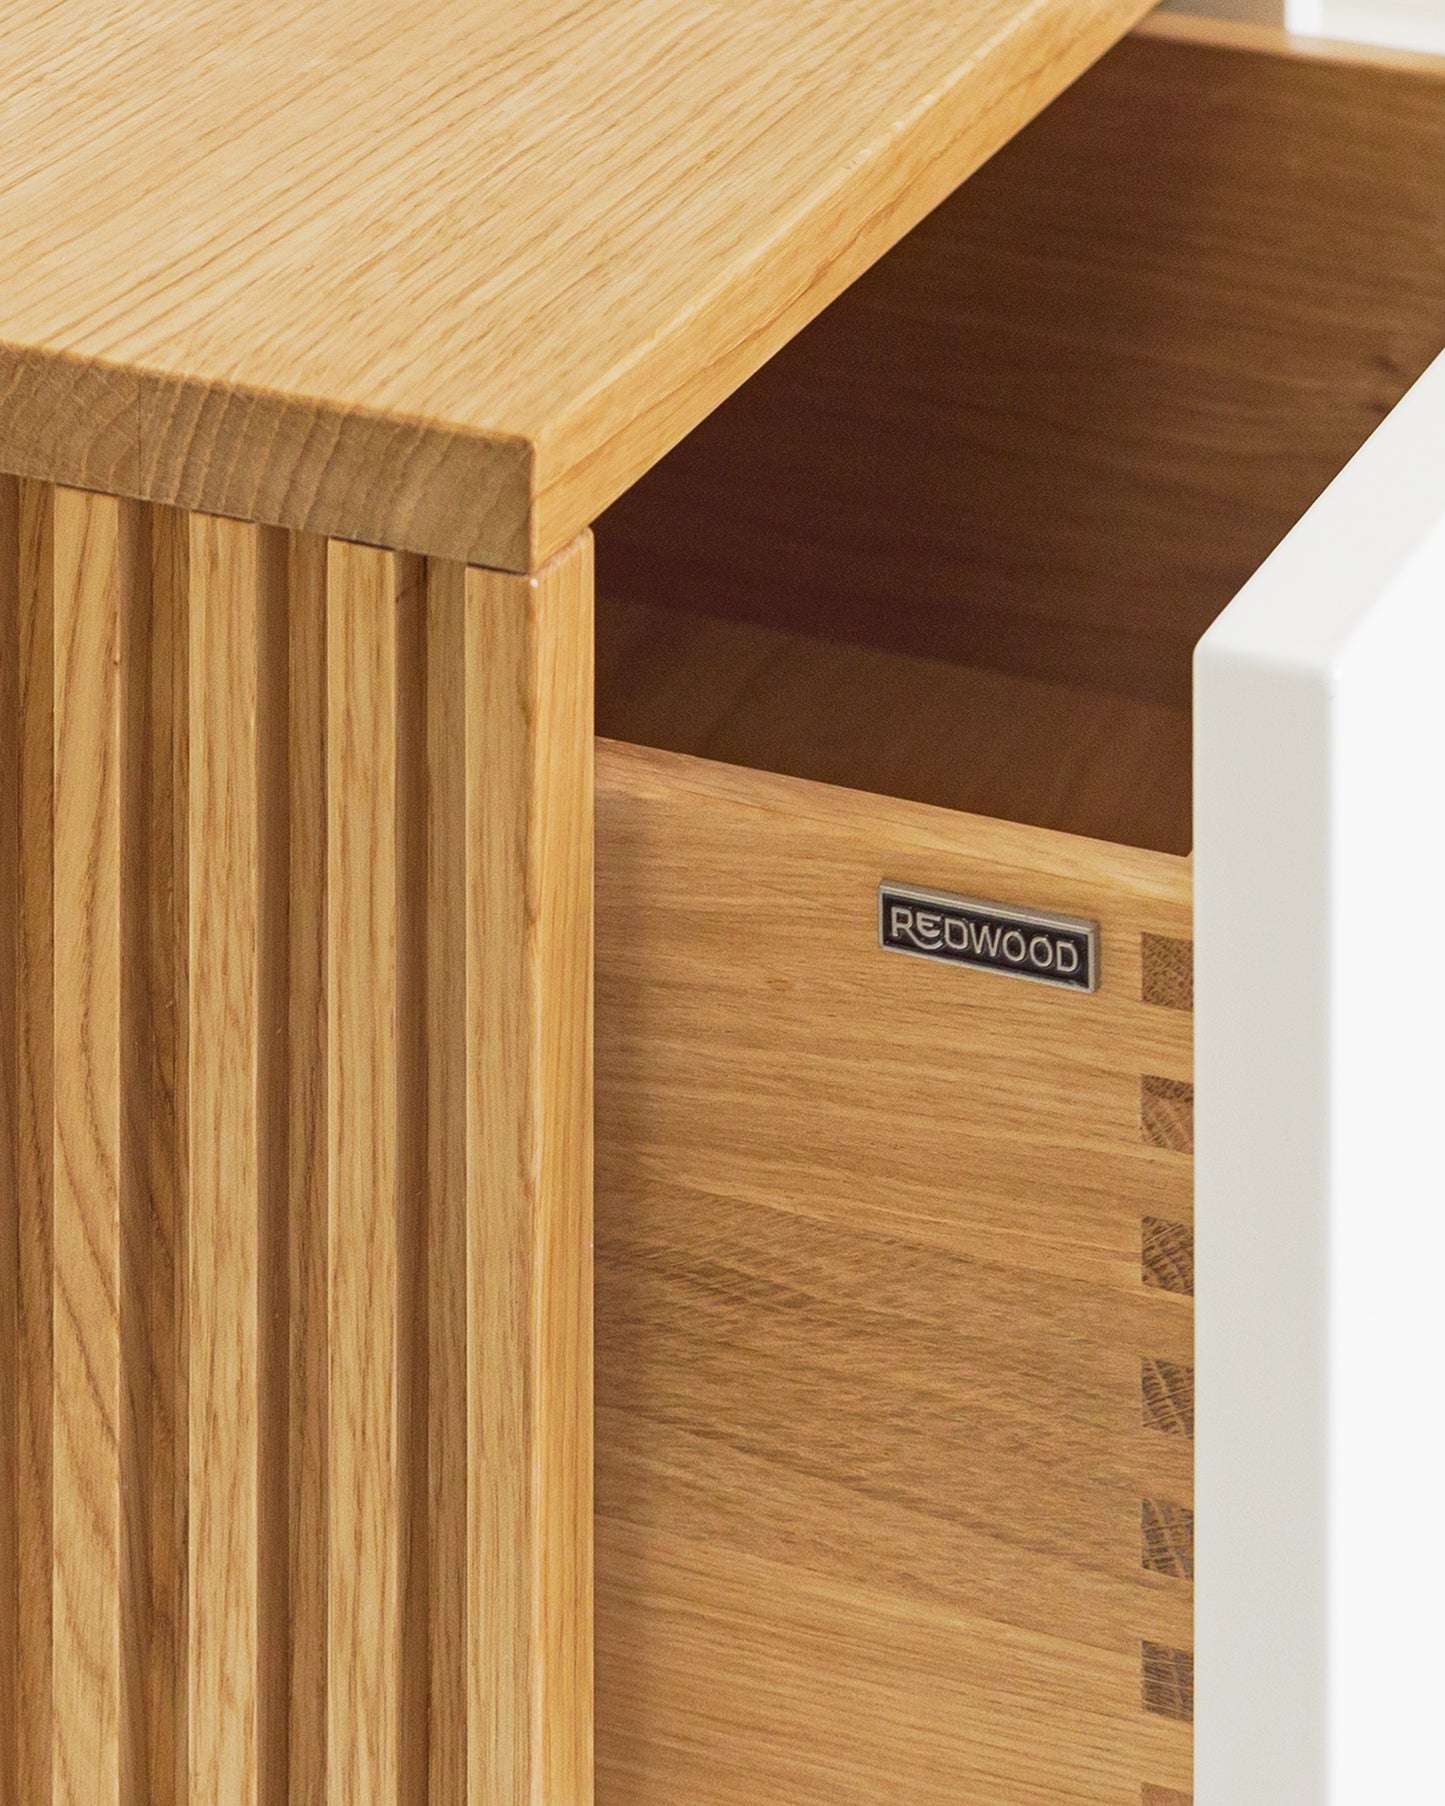 Sideboard XL in Eiche weiß:Schubladen in Massivholz:Die Verwendung von Massivholz für die Schubladen und die unterseitige (also nicht sichtbare) Befestigung der Auszüge sorgen nicht nur für ein hochwertiges Design, sondern auch für maximale Stabilität und Langlebigkeit.